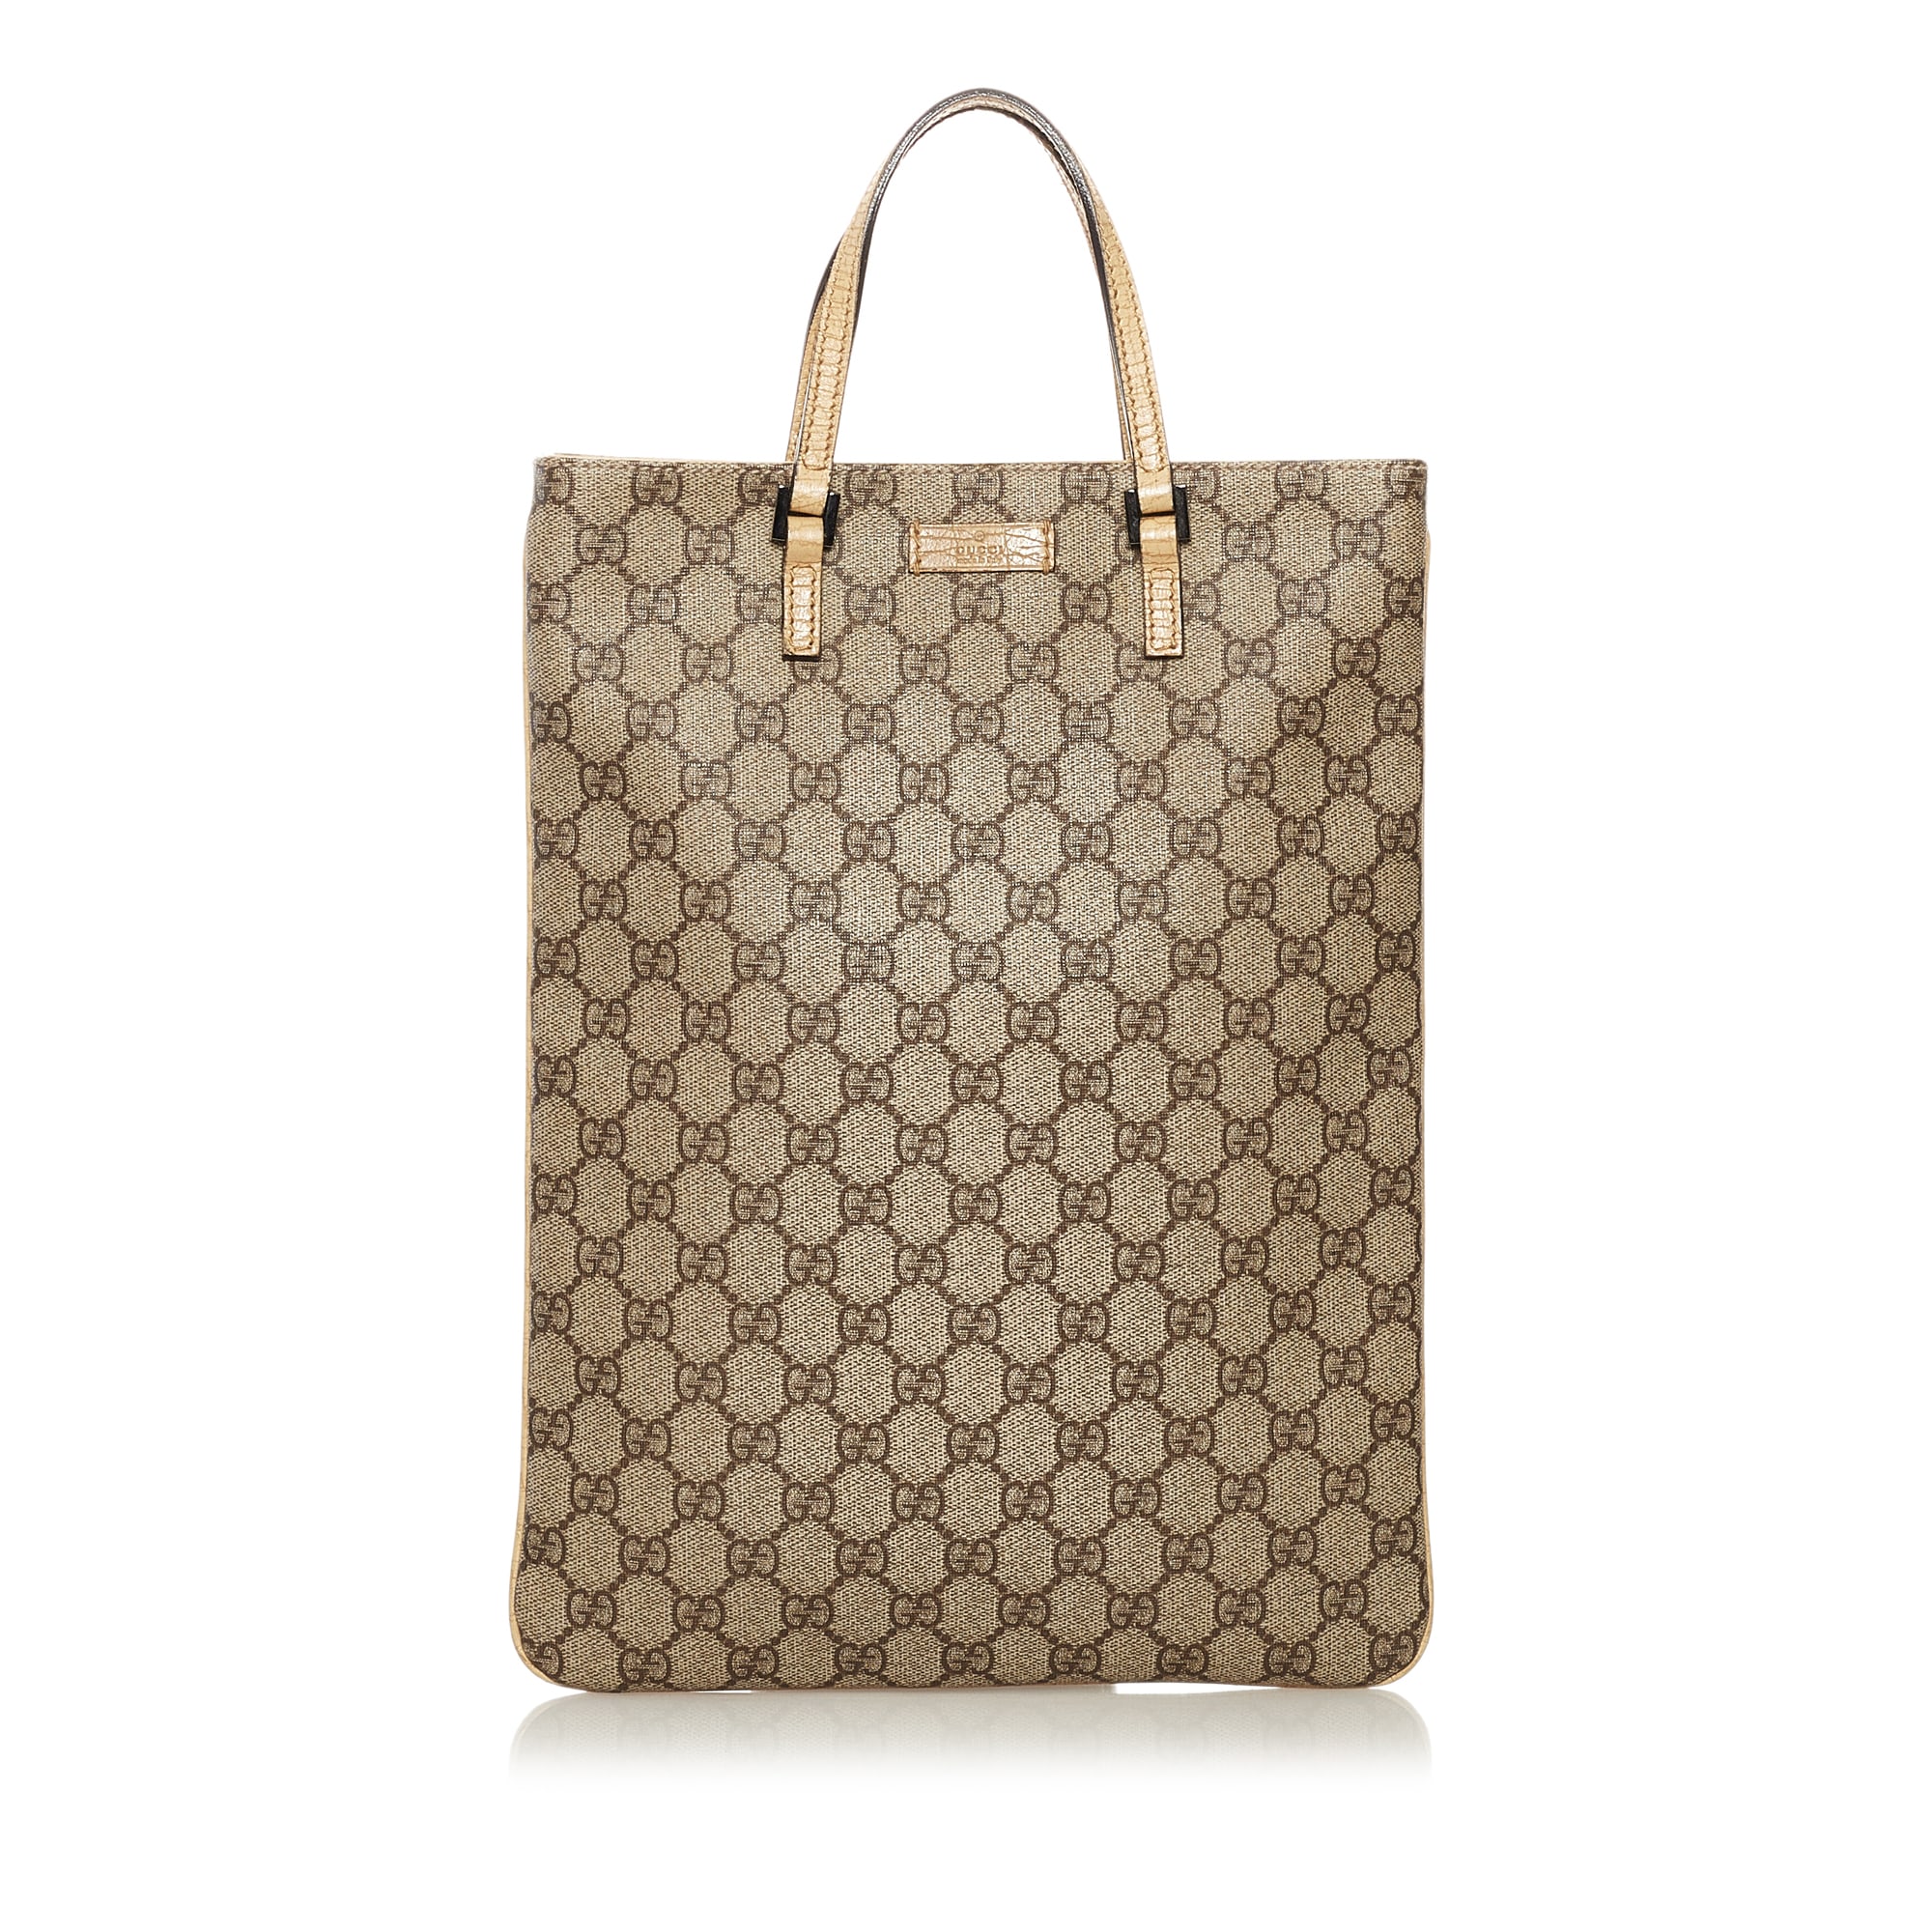 Gucci Gg Supreme Tote Bag, ONESIZE